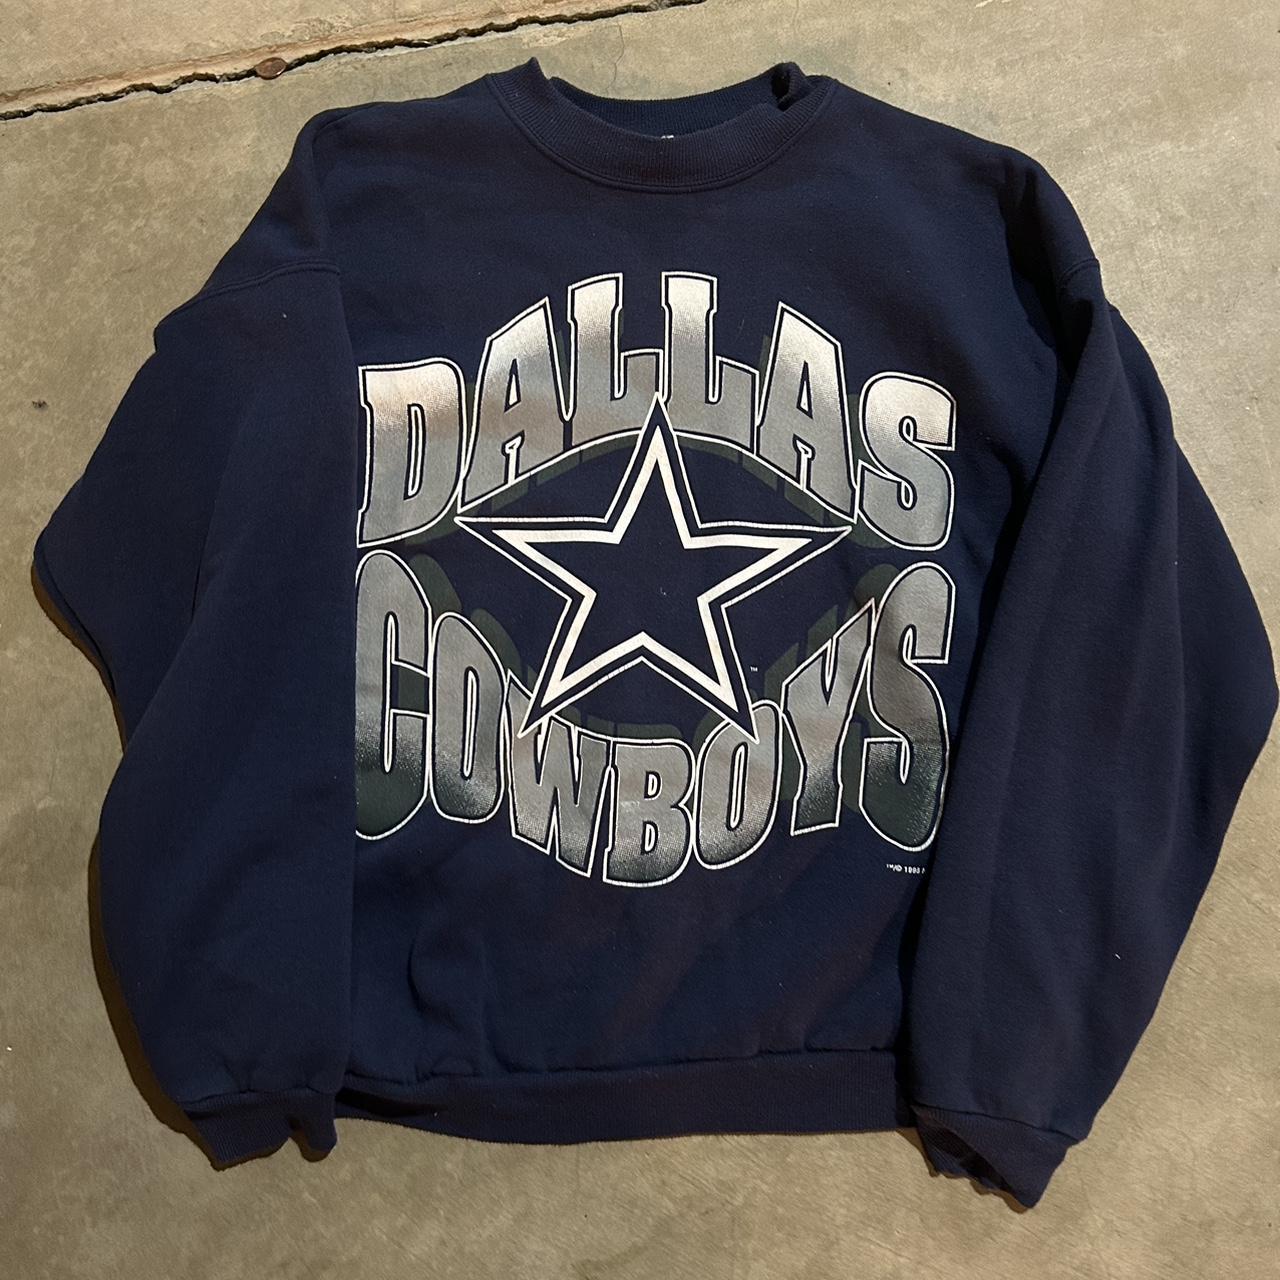 Vintage Dallas cowboys crewneck from 1995 #vintage... - Depop